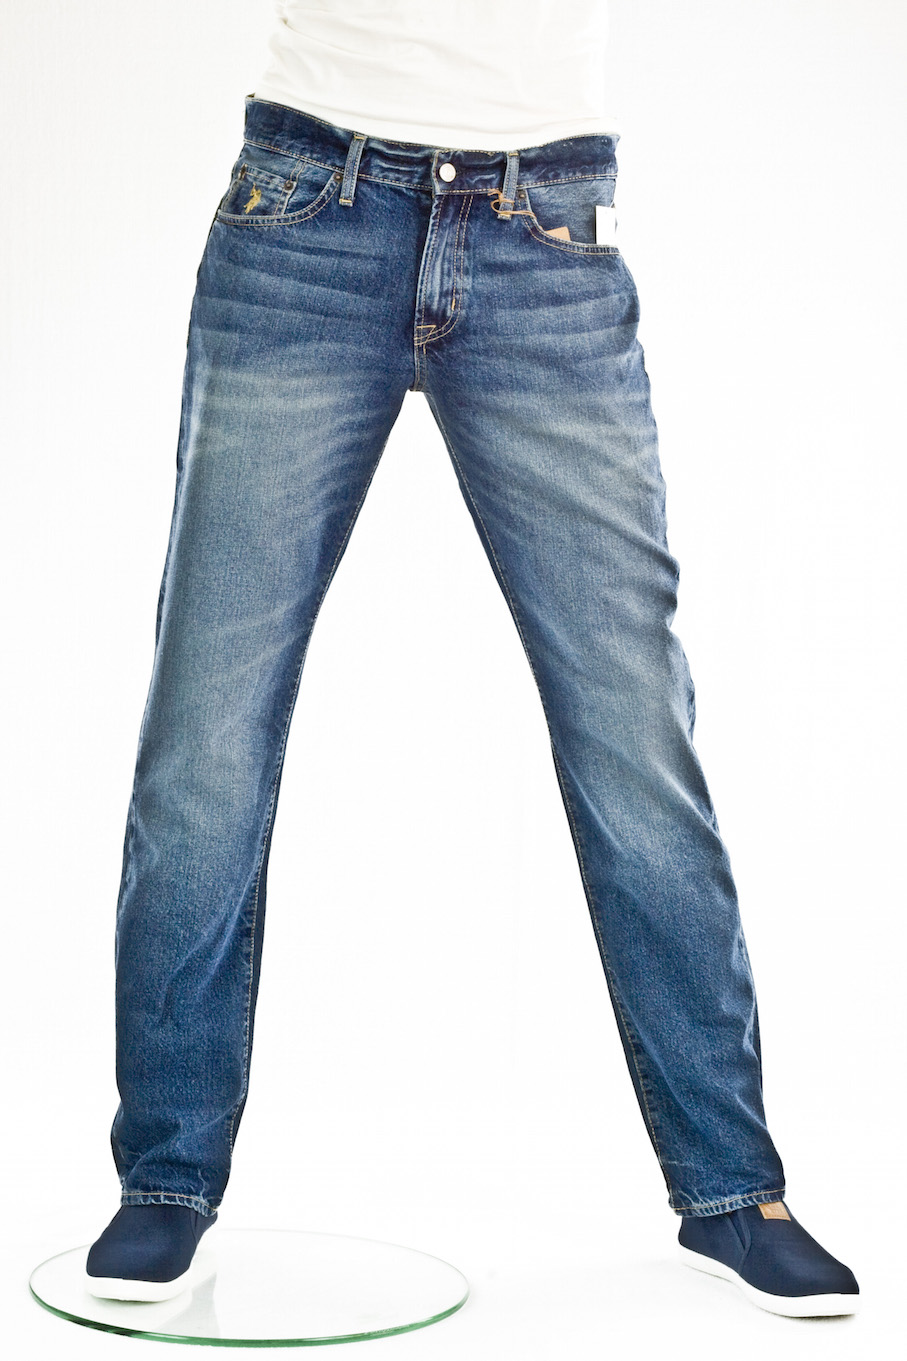 Мужские джинсы US Polo Assn. прямые Slim Straight Medium Wash